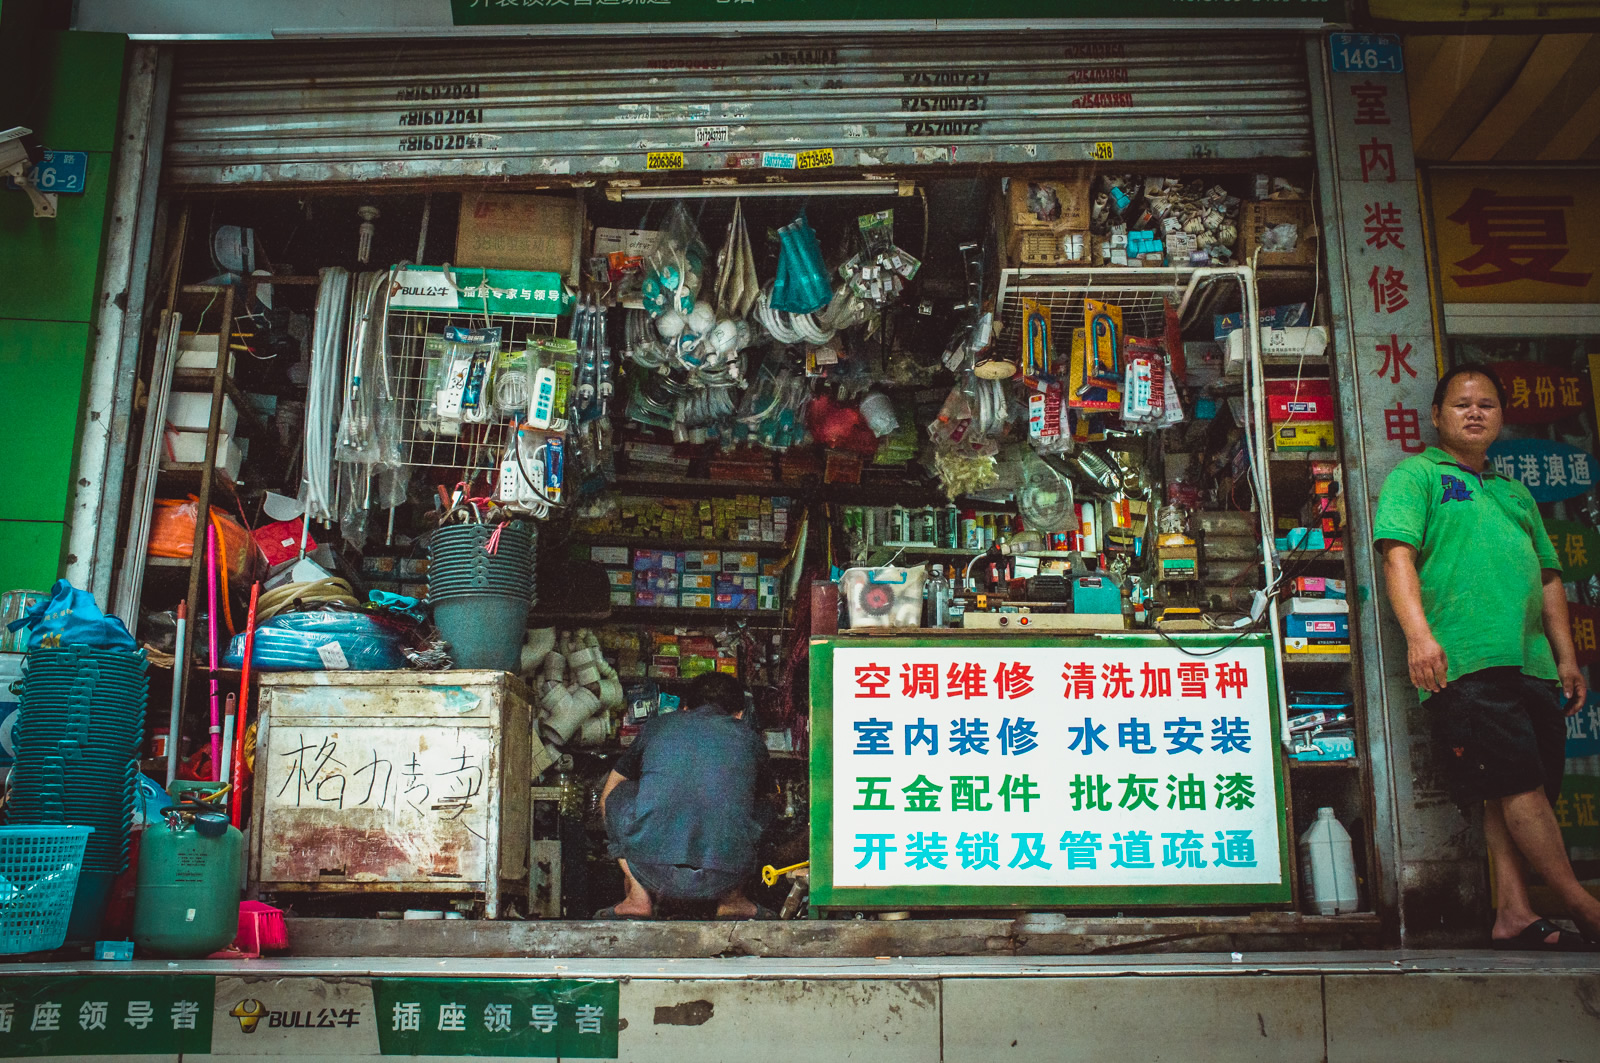 Street photography, Luohu, Shenzhen, China